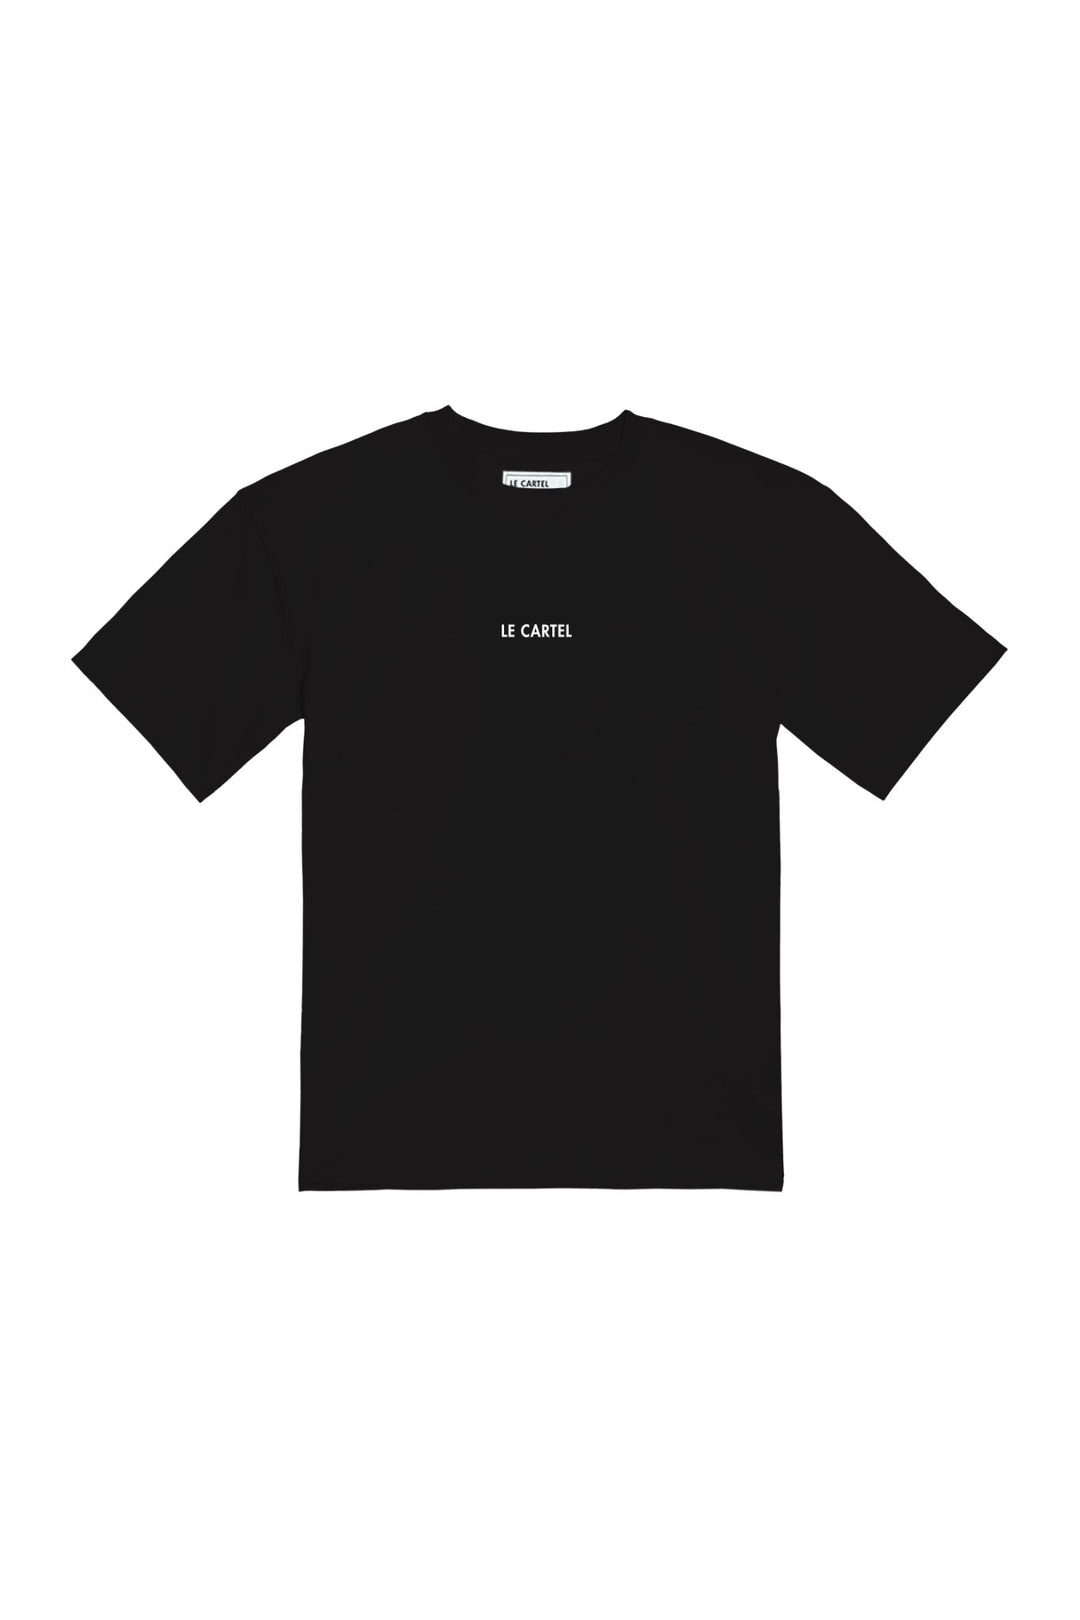 AMOURS MIGRATEURS・T-shirt unisexe・Noir - Le Cartel